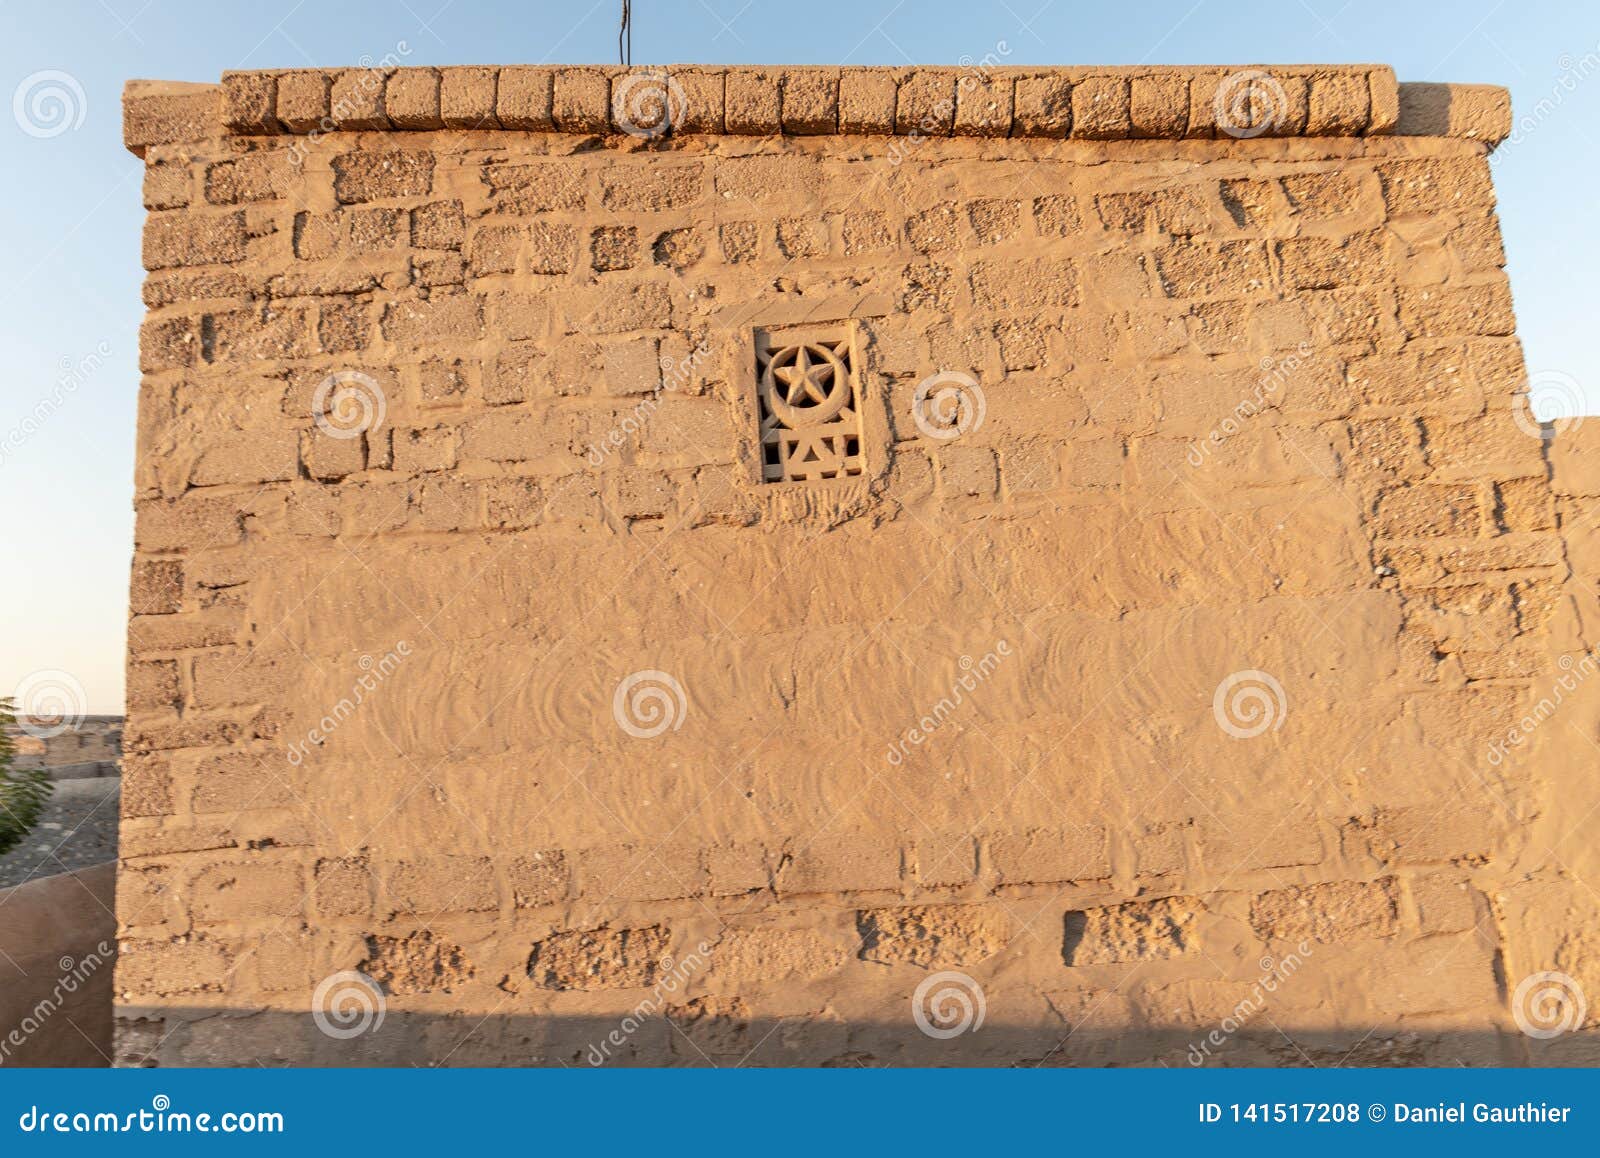 ruined house with a small mashrabiya, al jazirah al hamra, ras al khaimah